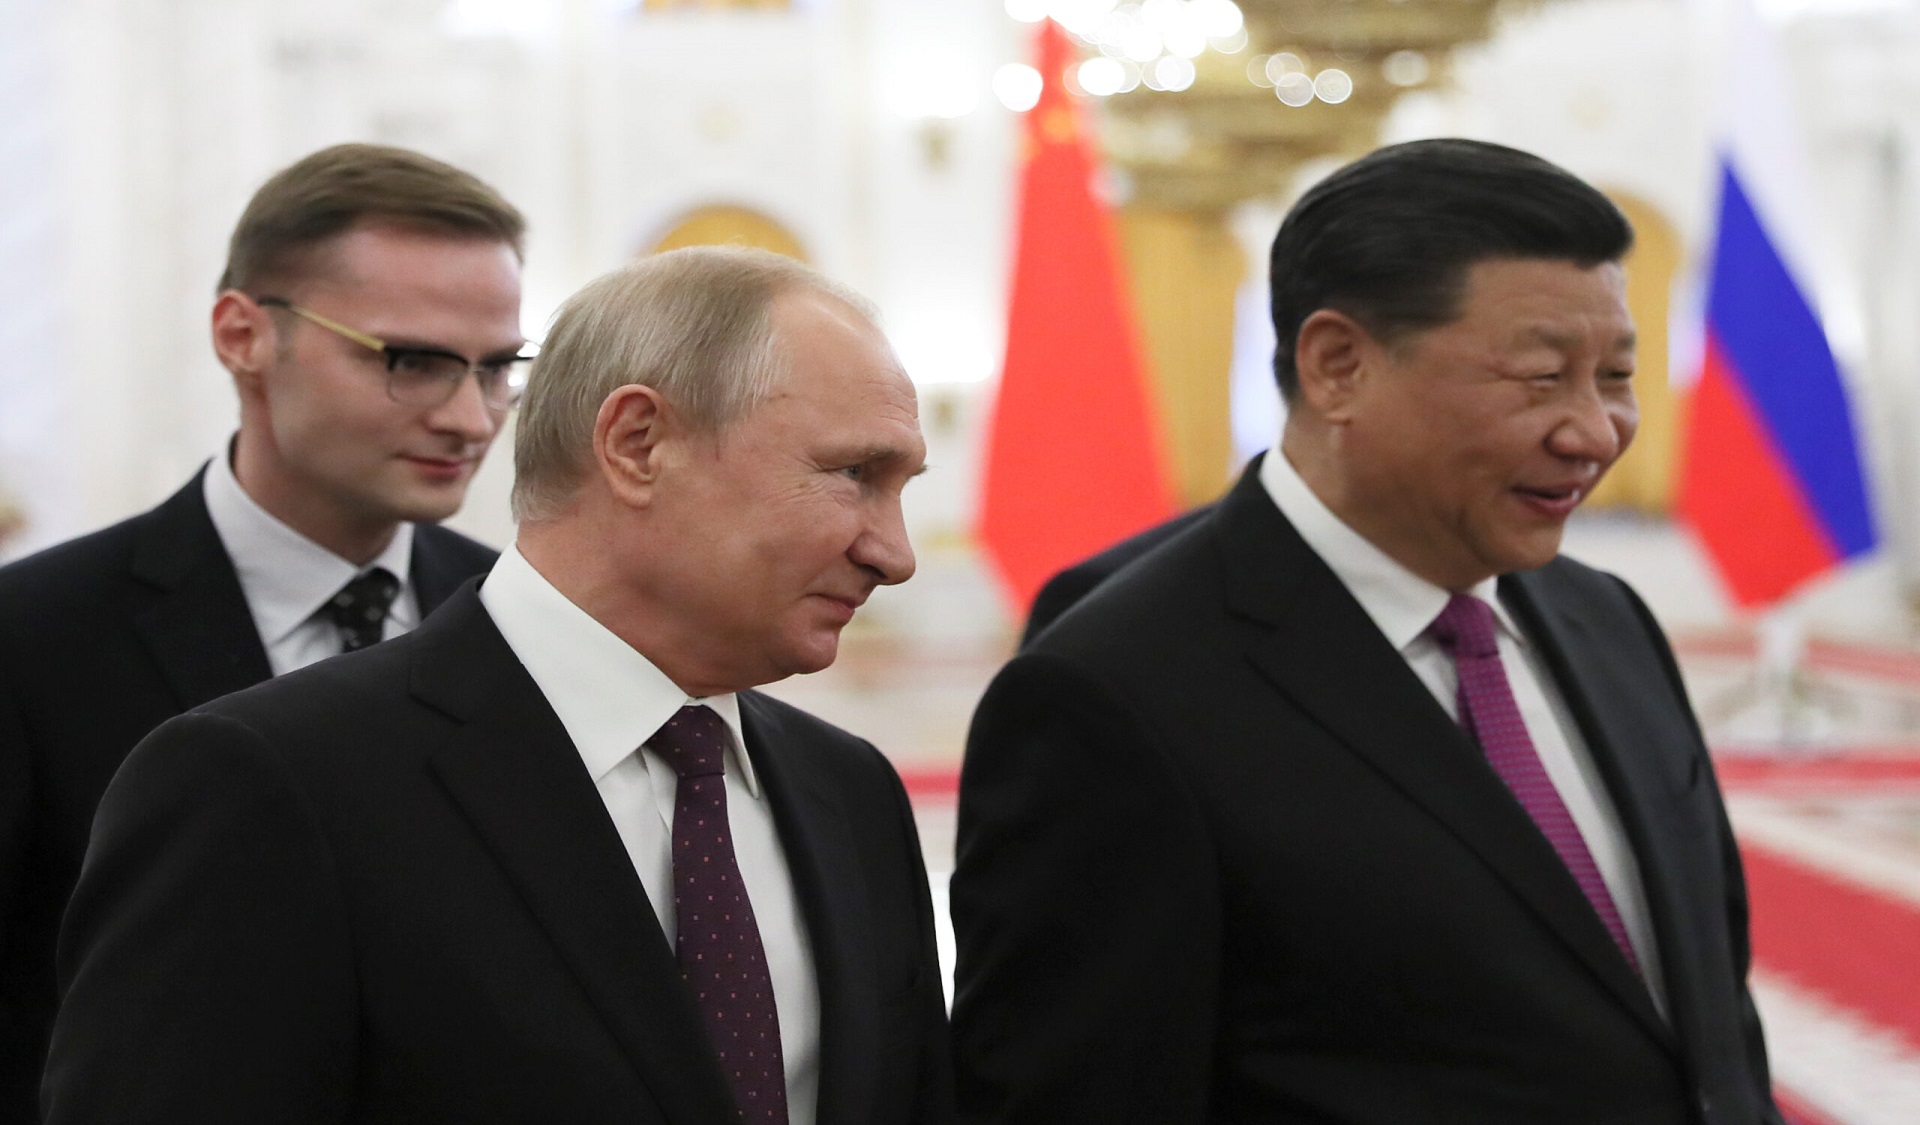 Le subtil virage ukrainien de la Chine est-il une opportunité pour apaiser les tensions ?